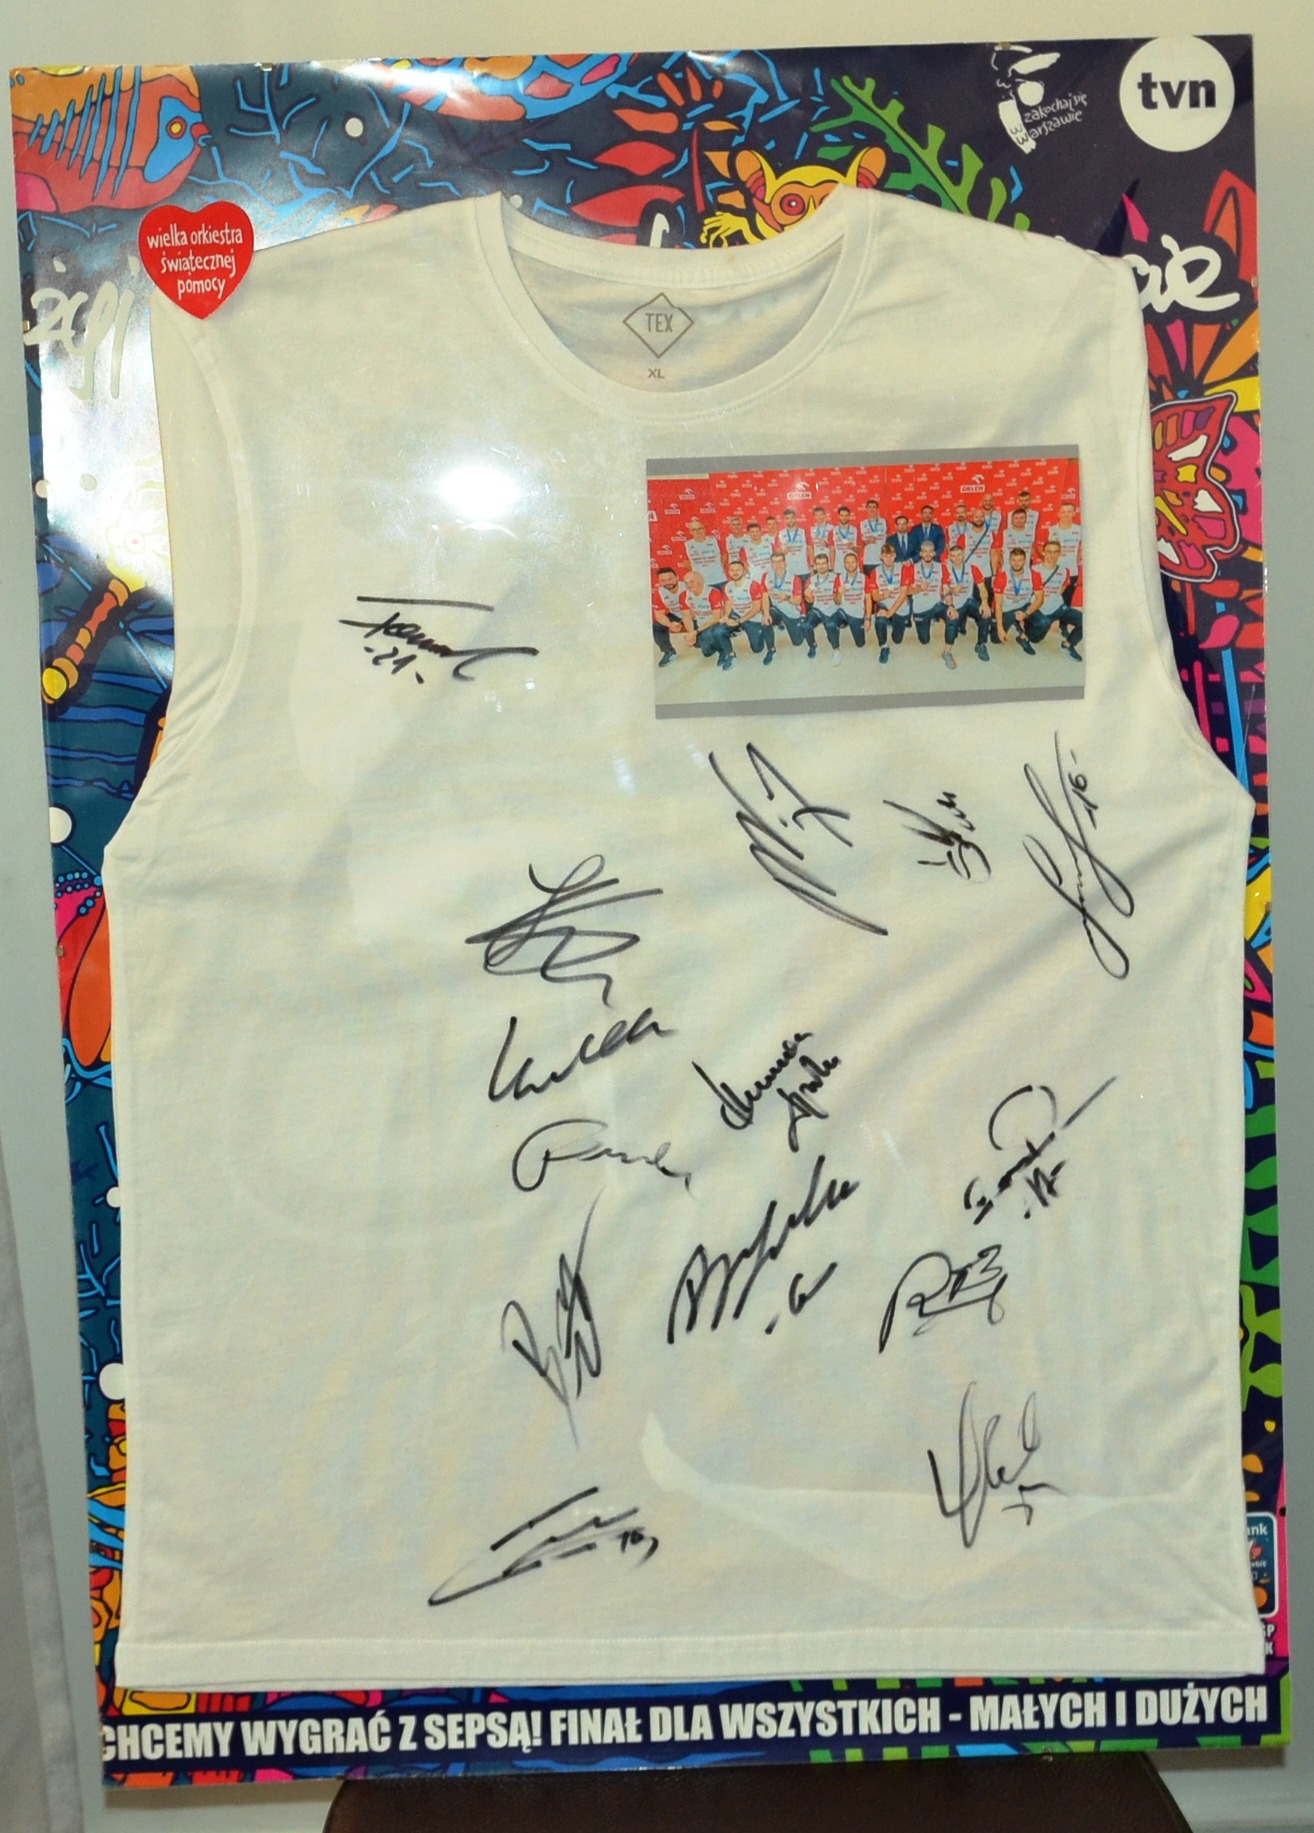 Koszulka z podpisami wicemistrzów świata w piłce siatkowej mężczyzn  z 2020 roku. Darczyńca p. Aneta Nowacka.
Cena minimalna - 500zł